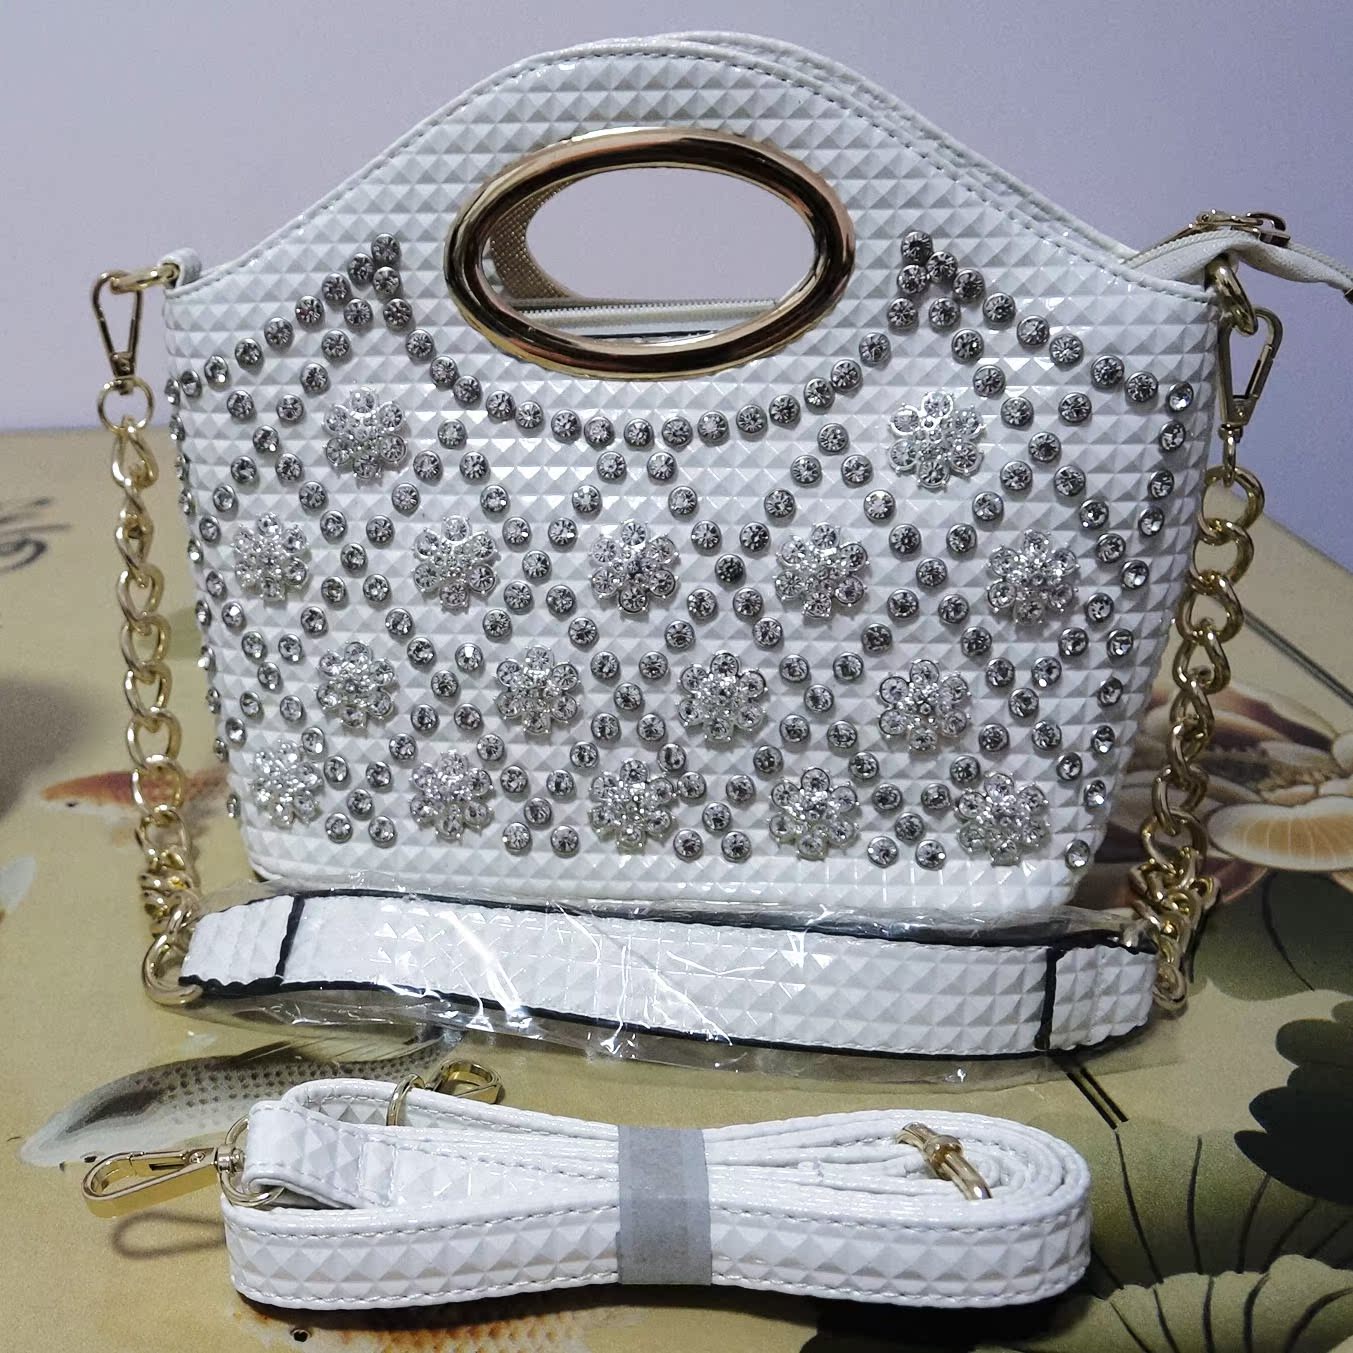 欧妮儿2016最新款潮流时尚气质包女包包邮手提包商务包链条包镶钻